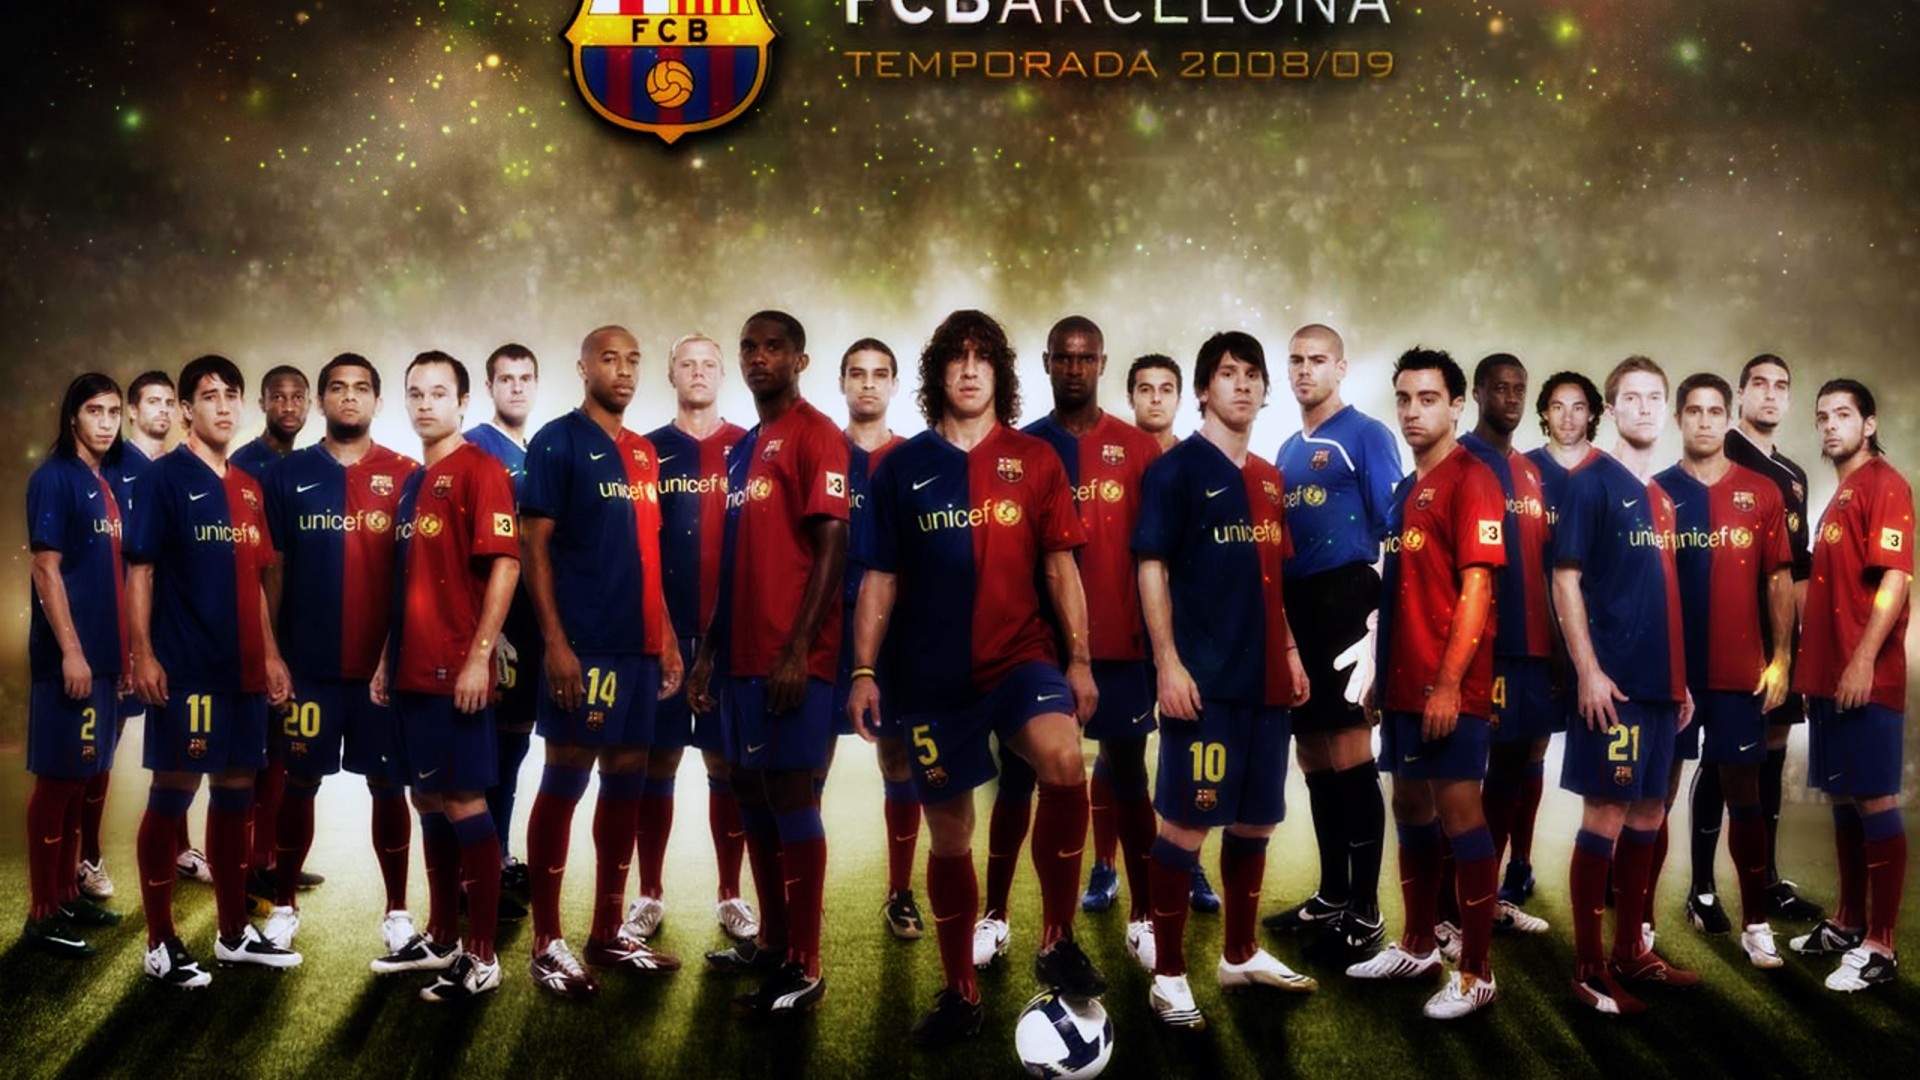 barcelona wallpaper,team,football player,player,team sport,soccer player